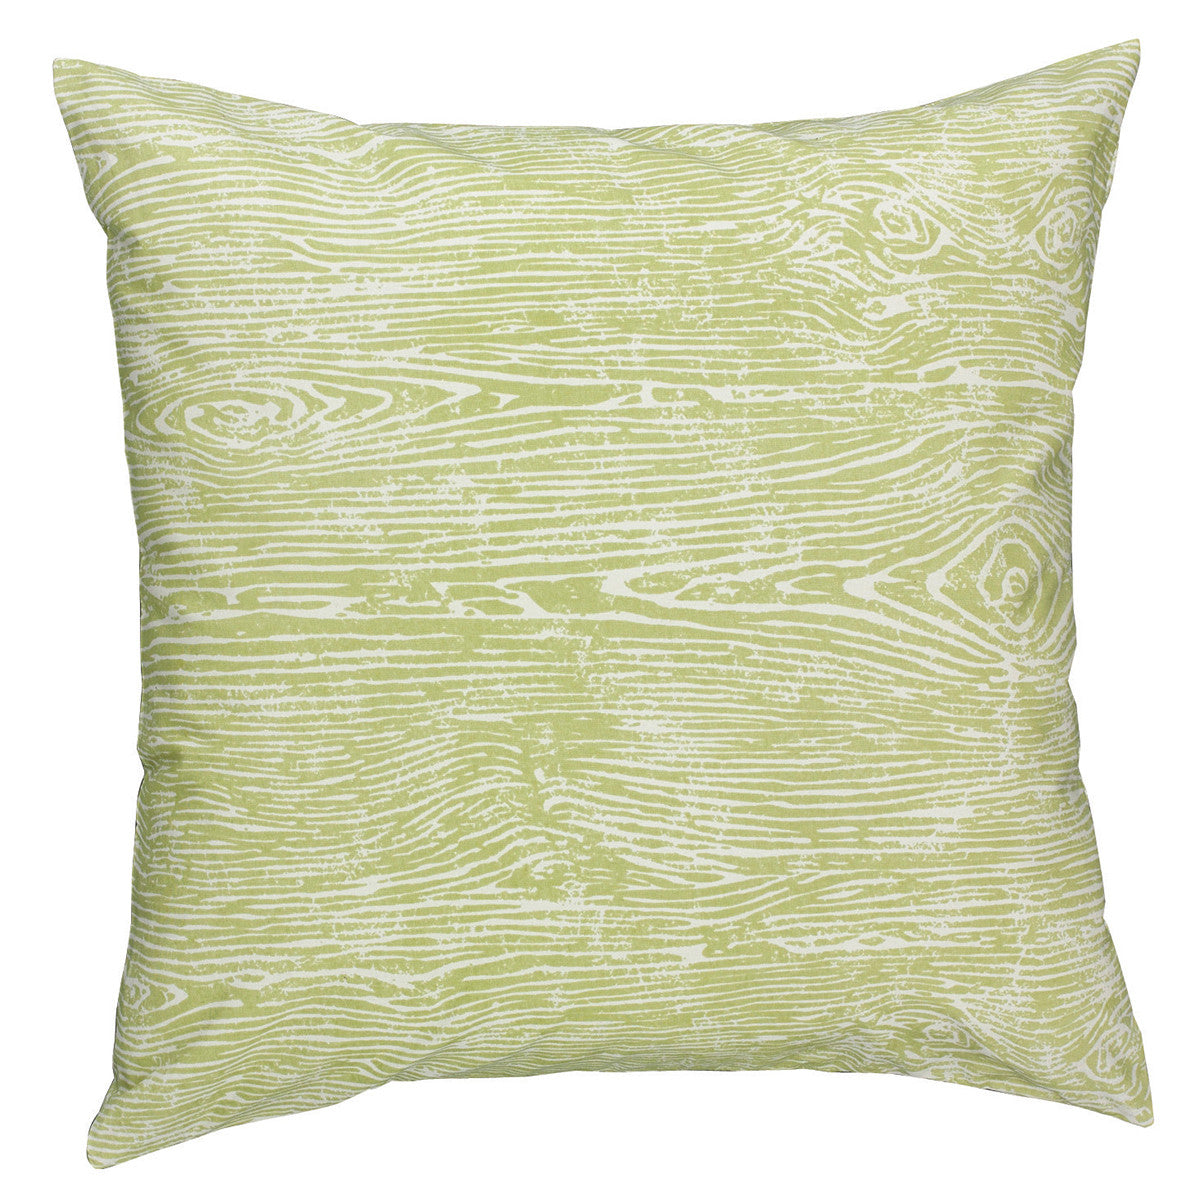 Wood Grain 18" Pillow Cover - Pistachio Set of 4 Park Designs